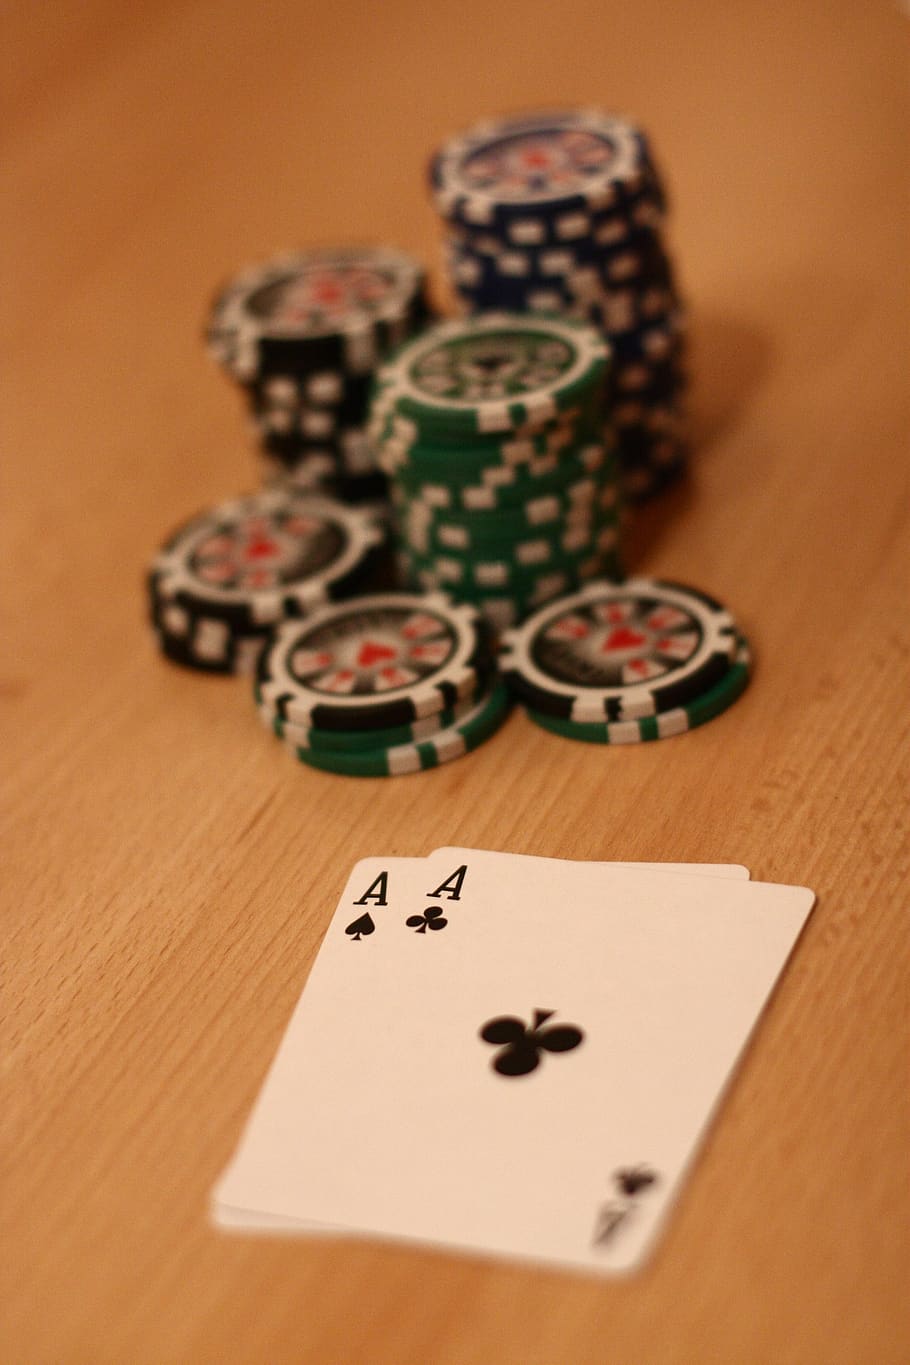 póker, ficha de póker, jugar póker, jugar, juegos de azar, ganar, casino, juego de cartas, riesgo, beneficio